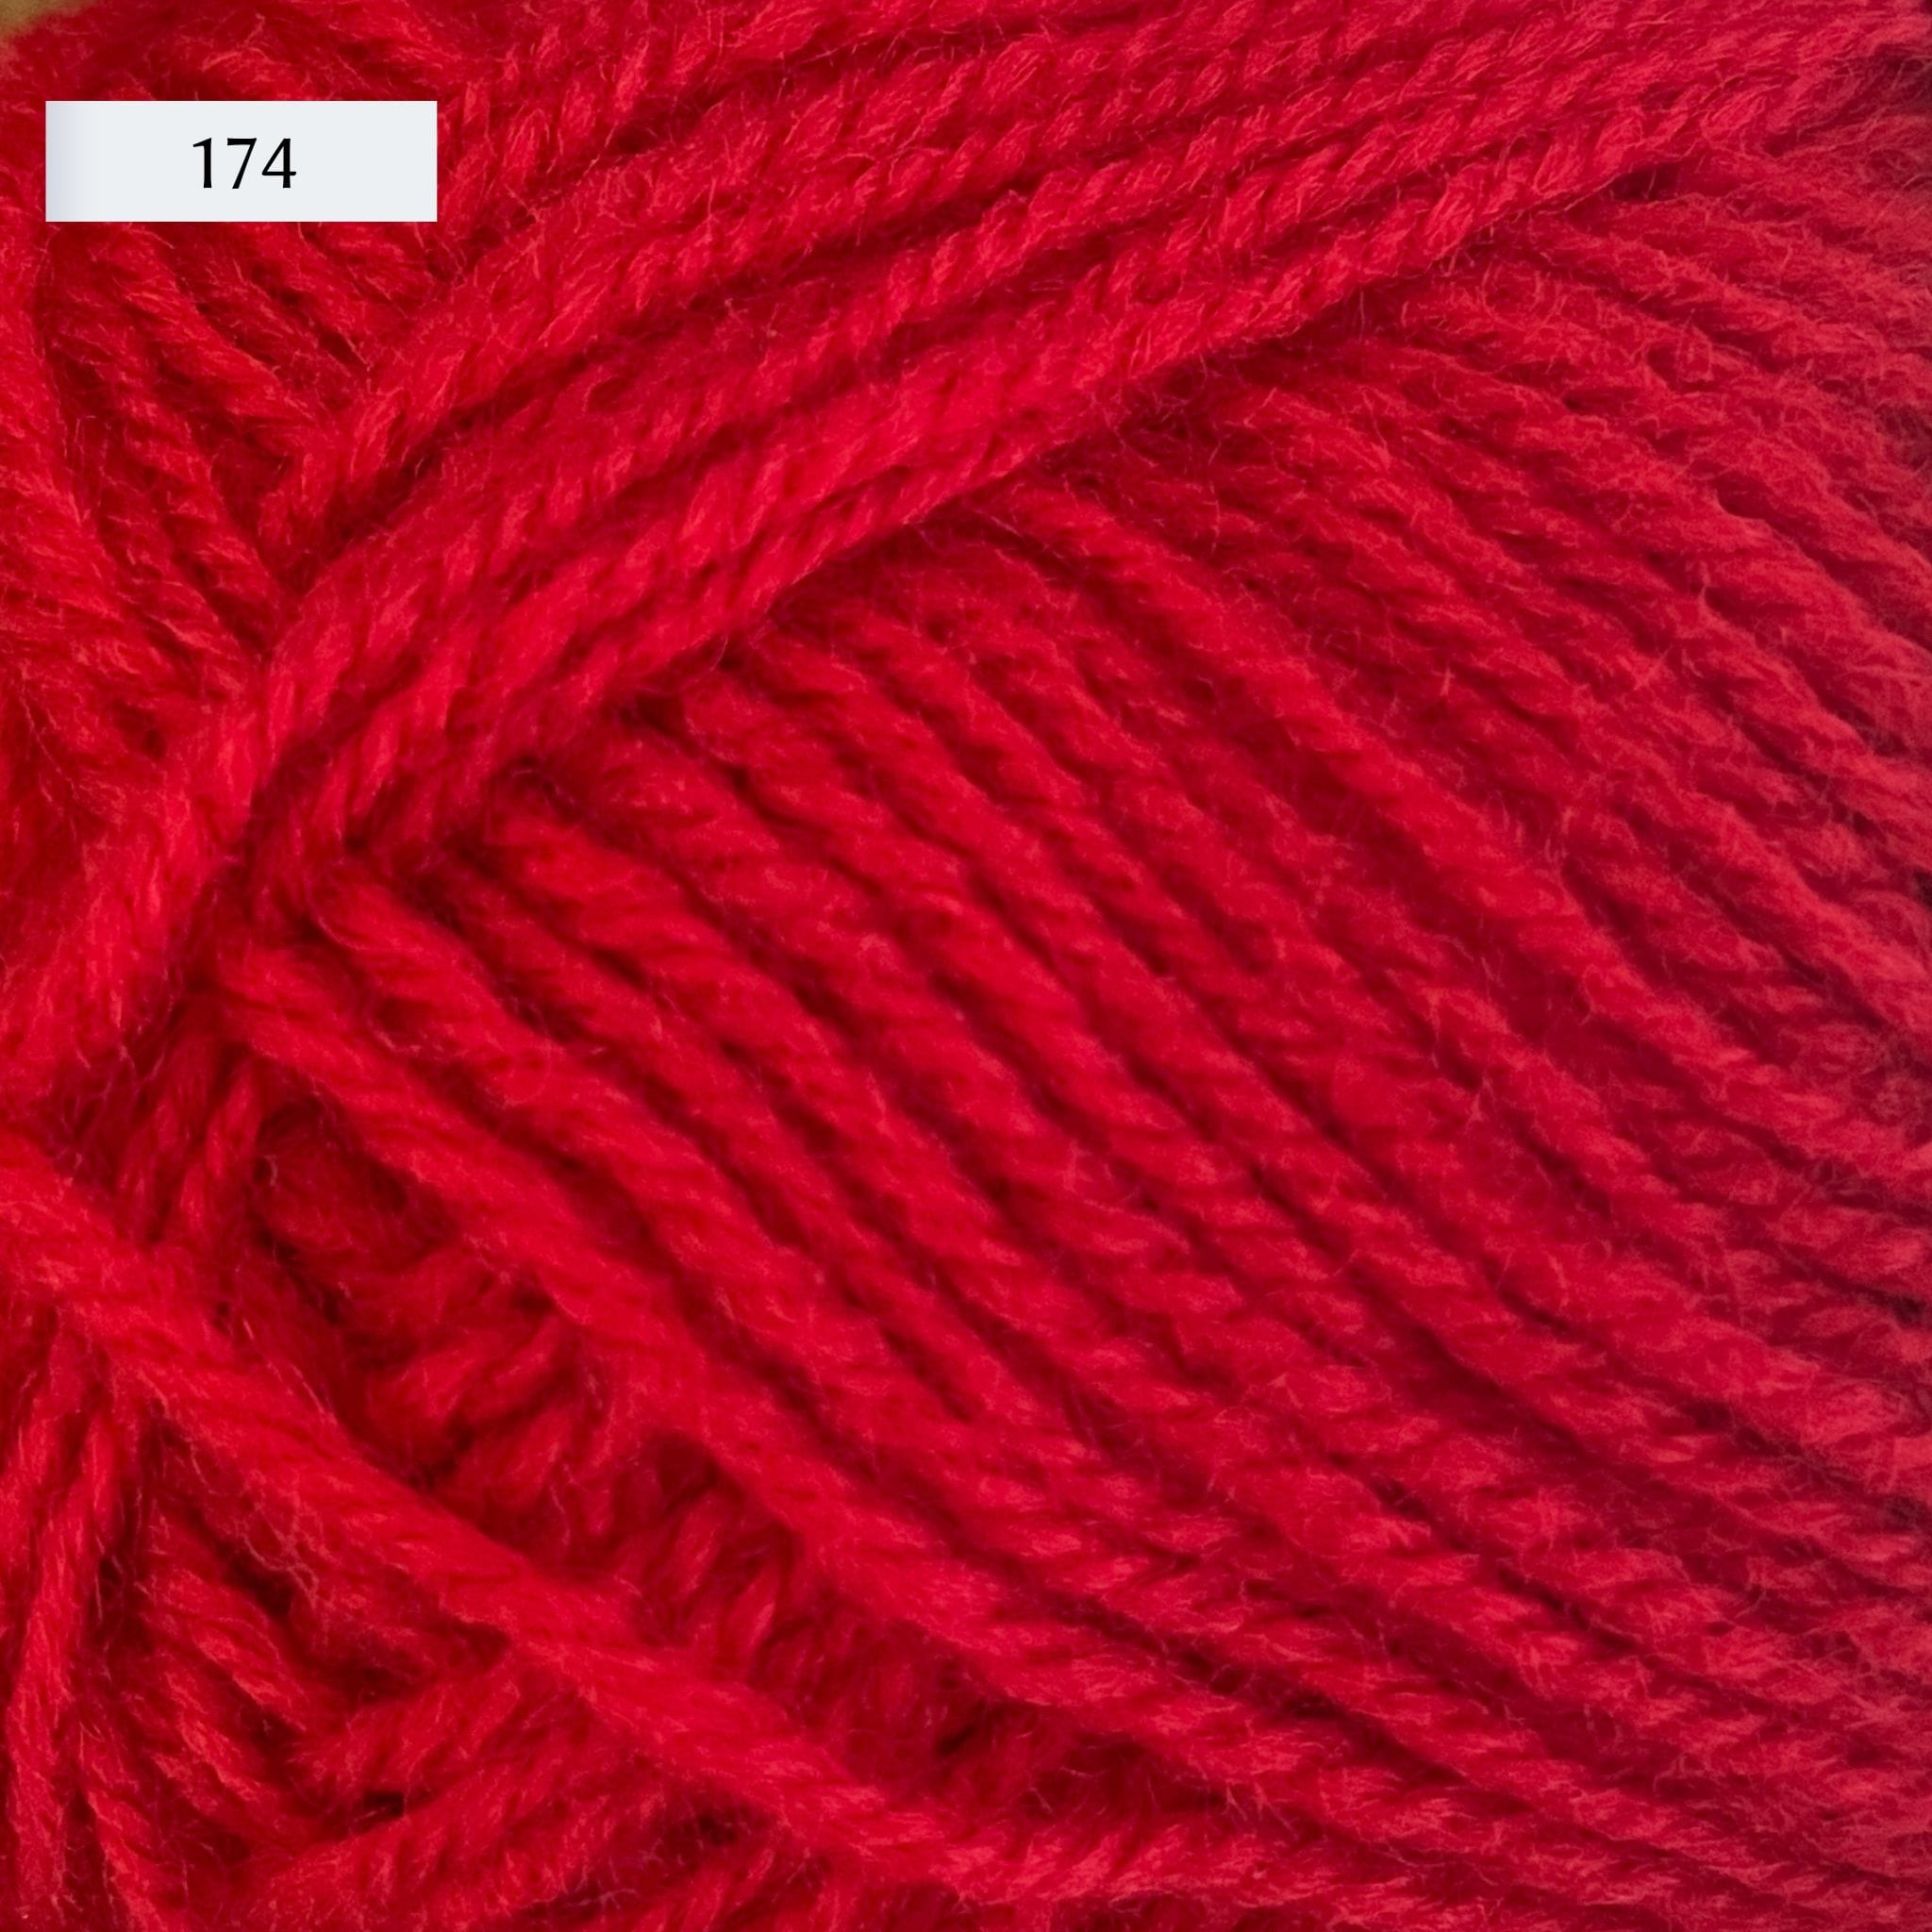 Rauma Strikkegarn, DK weight yarn, in color 174, bright red